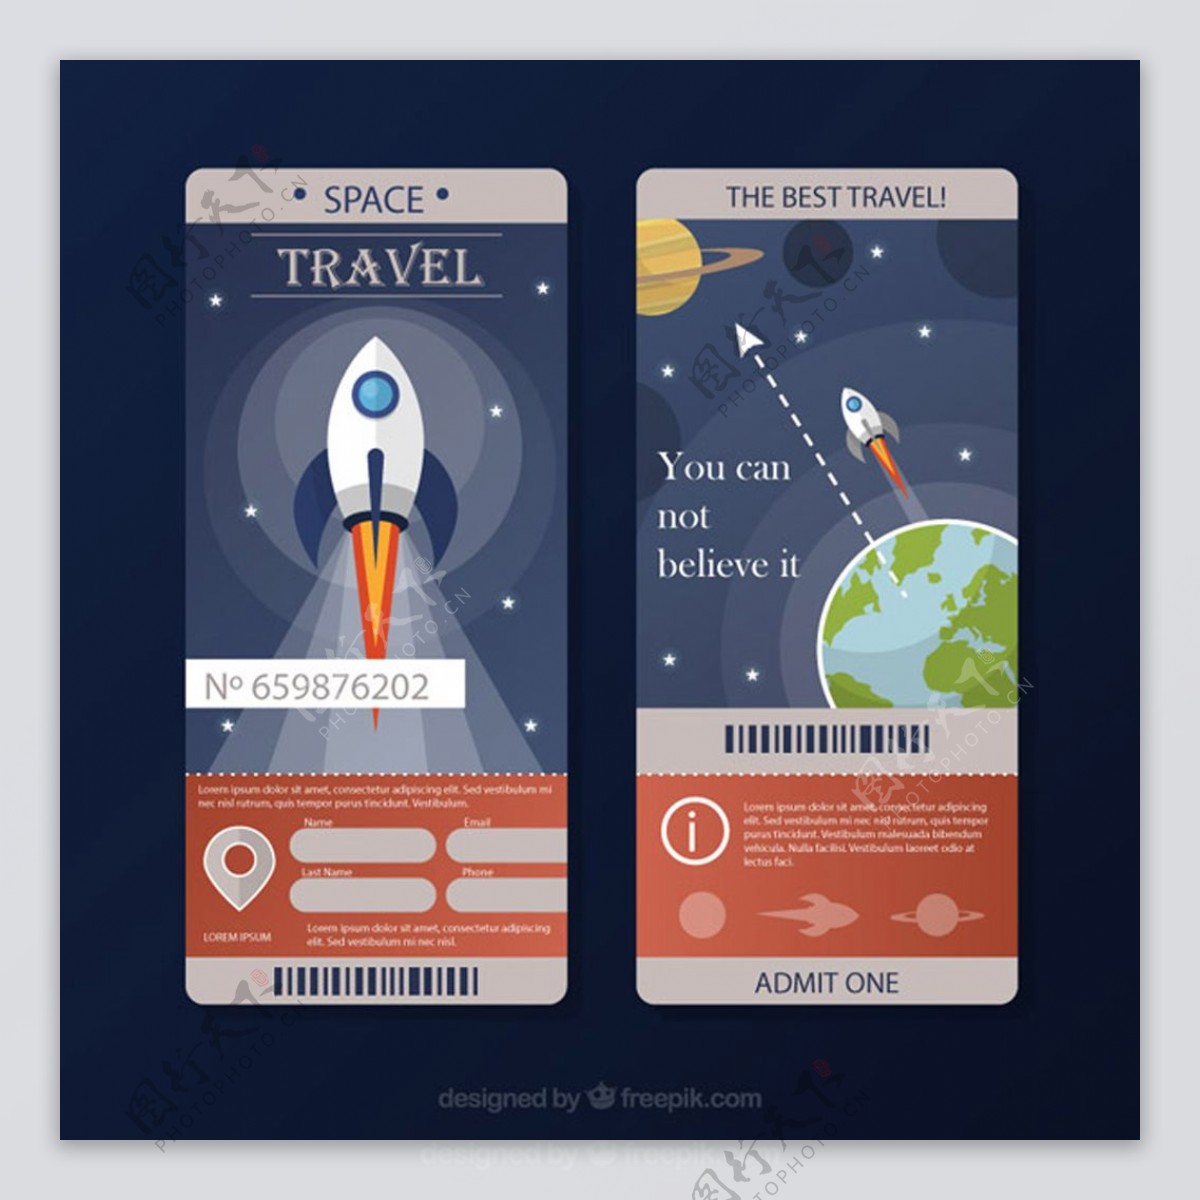 太空旅行票矢量设计素材